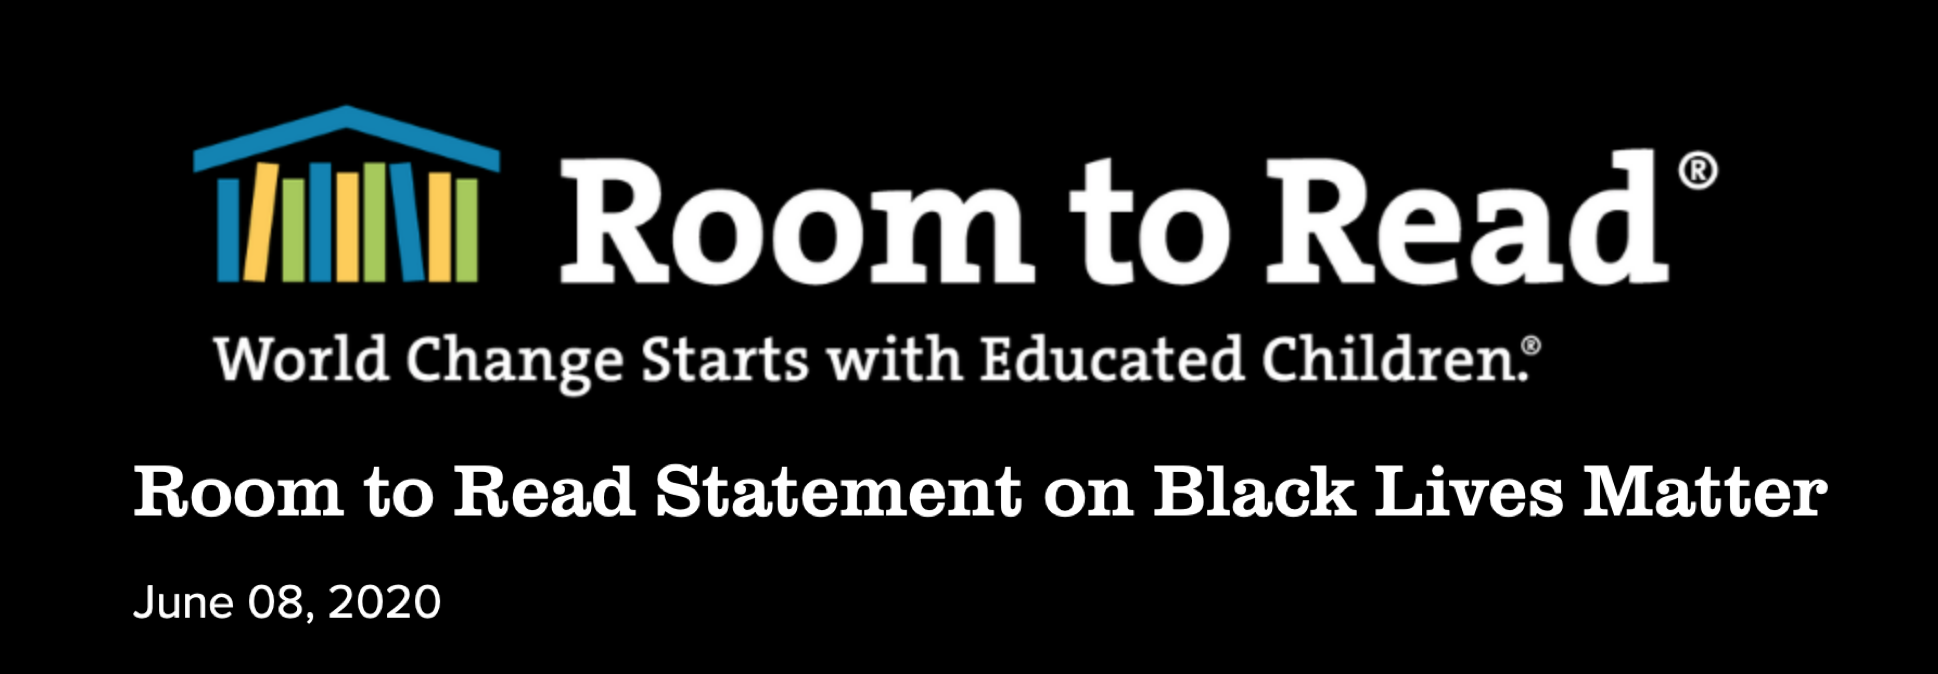 Statement on Black Lives Matter 